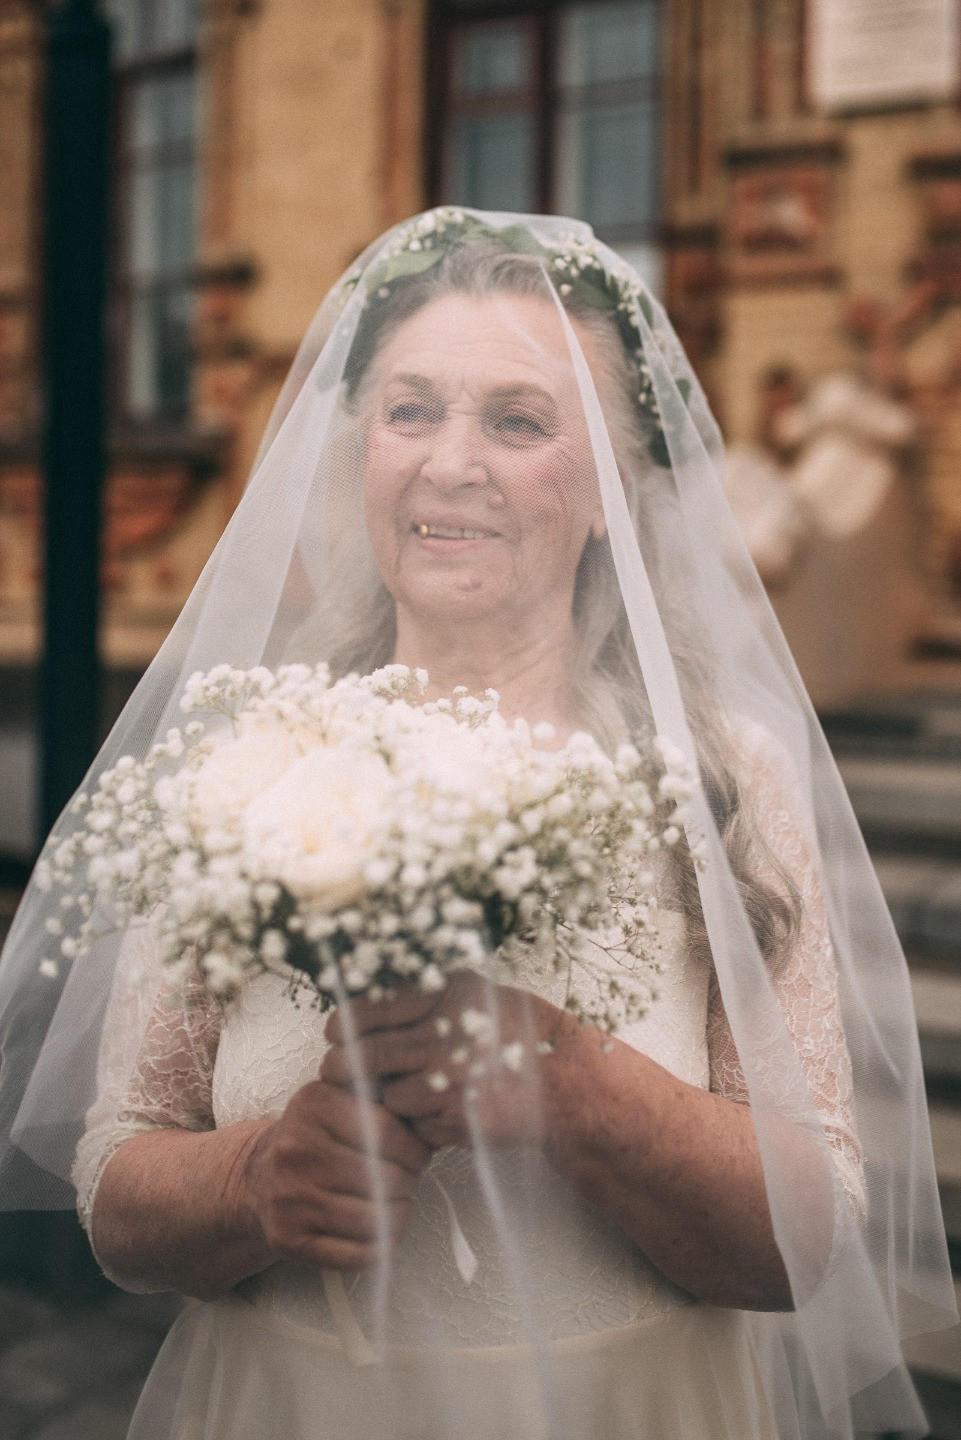 Бриллиантовая свадьба: стилизованная фотосессия о любви длиною в жизнь